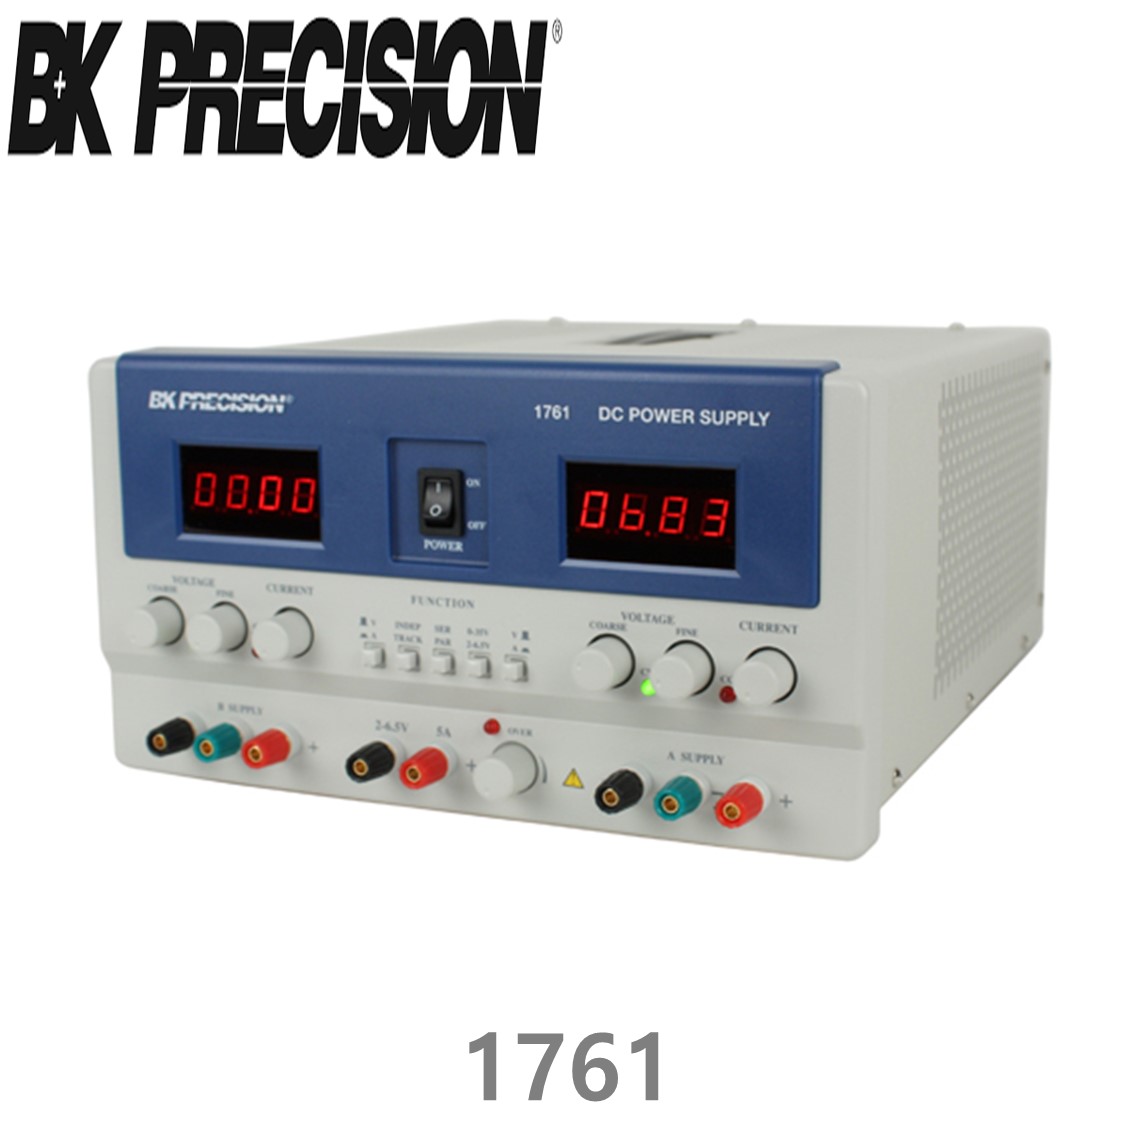 [ BK PRECISION ] BK 1761, 35V/3A x 2채널(가변), 6.5V/5A x 1채널(가변), Triple OutputDC Power Supply, 3채널 DC 전원공급기, B&K 1761